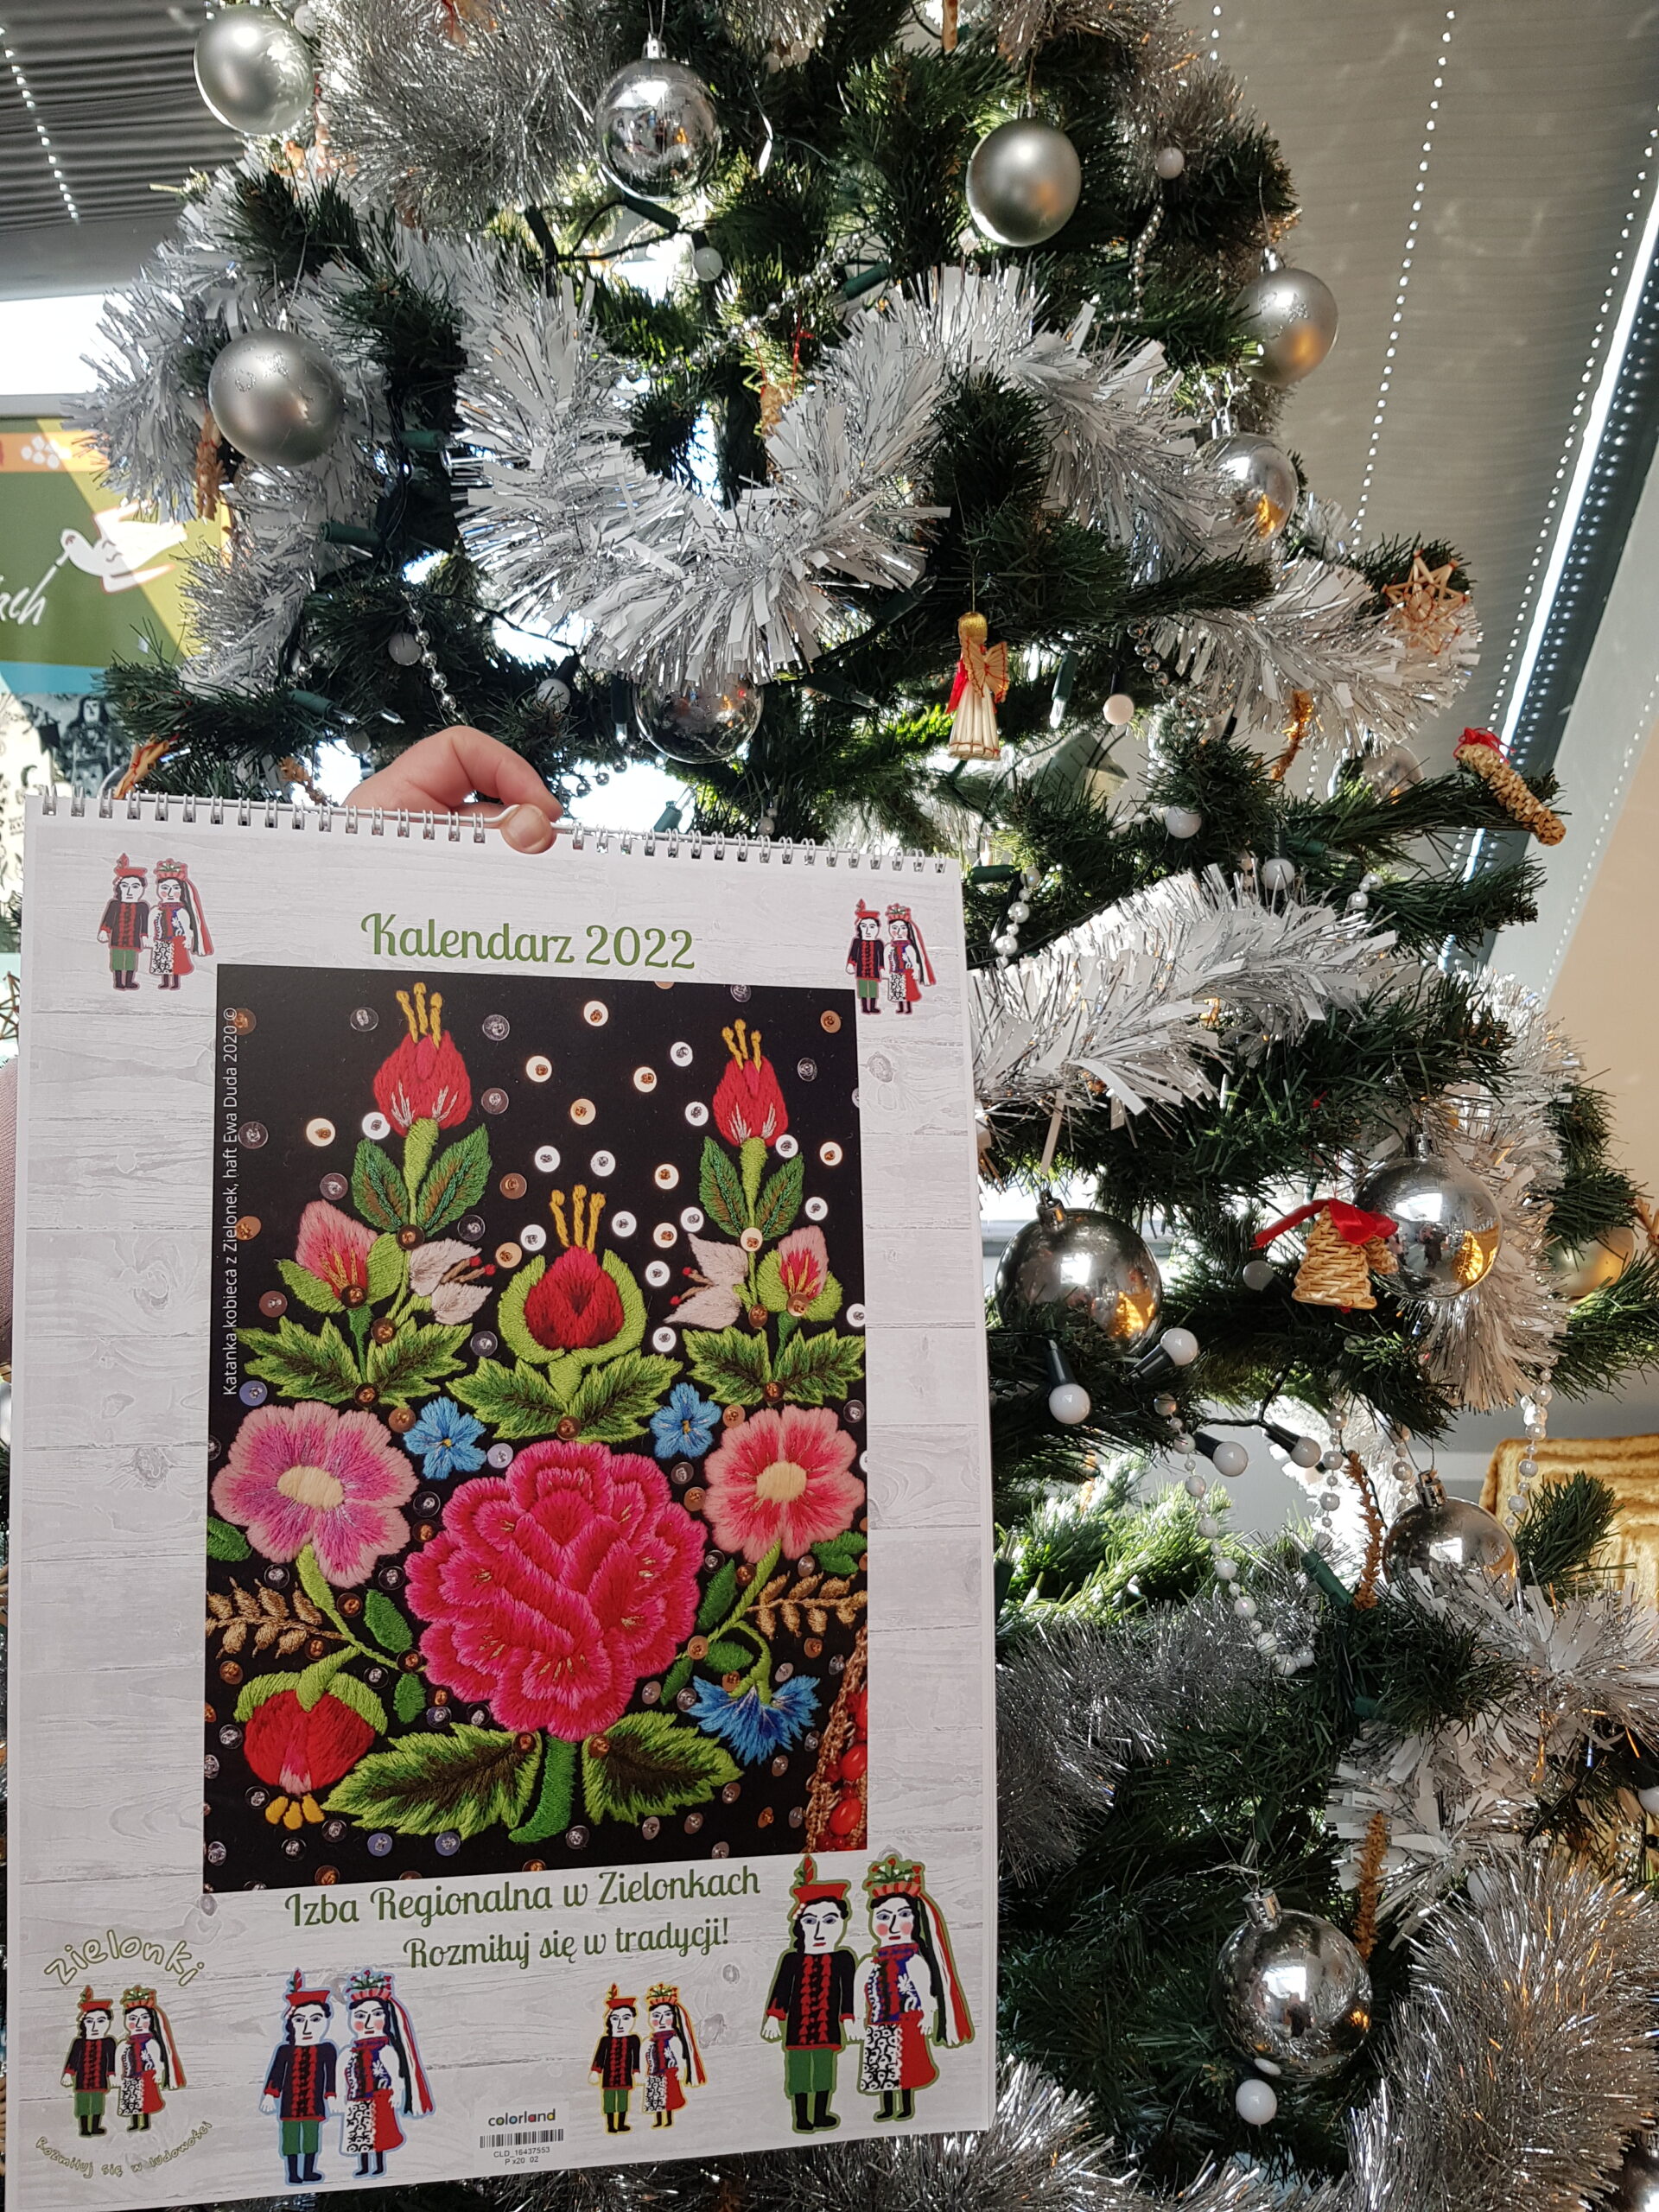 zdjęcie kalendarza na którym znajduje się wzór kwiatów z gorsetu krakowskiego, w tle choinka